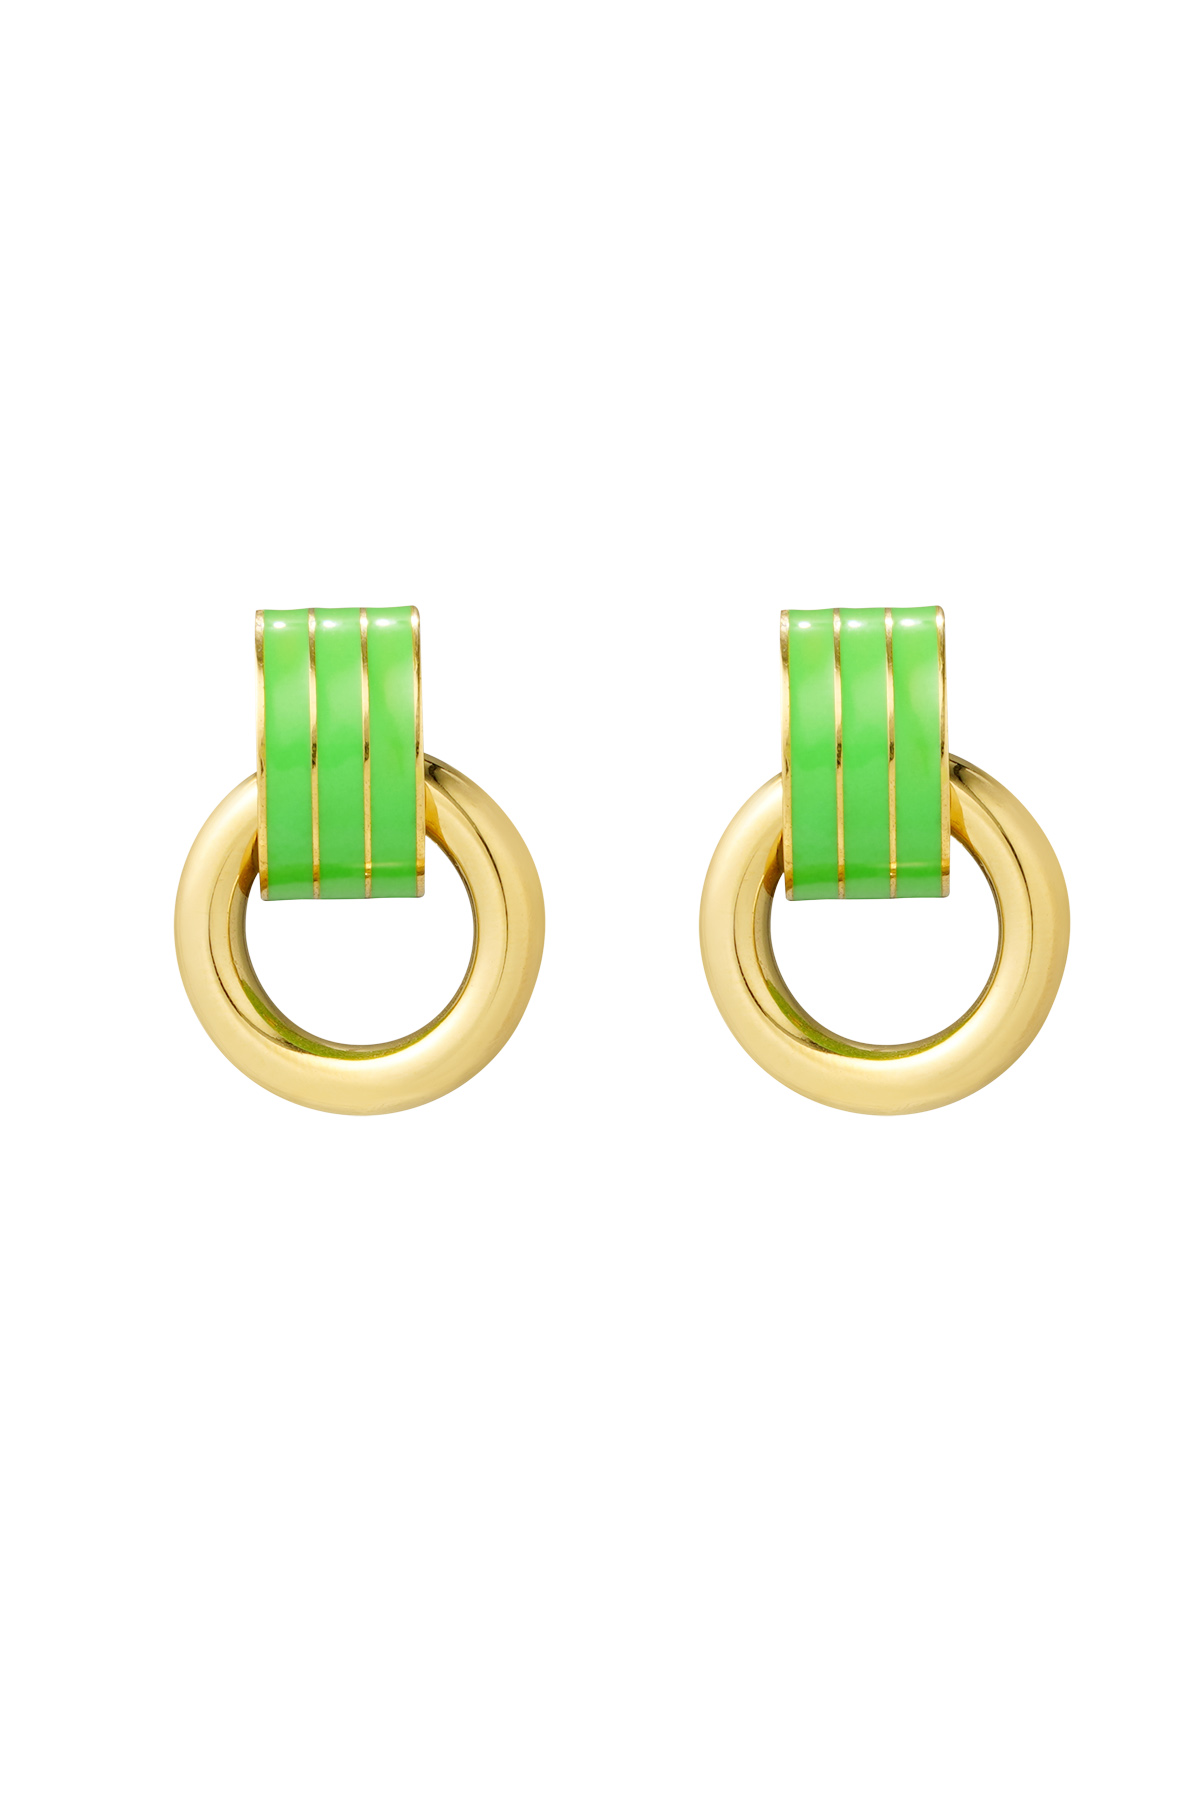 Ohrring doppelschichtig grün - gold h5 